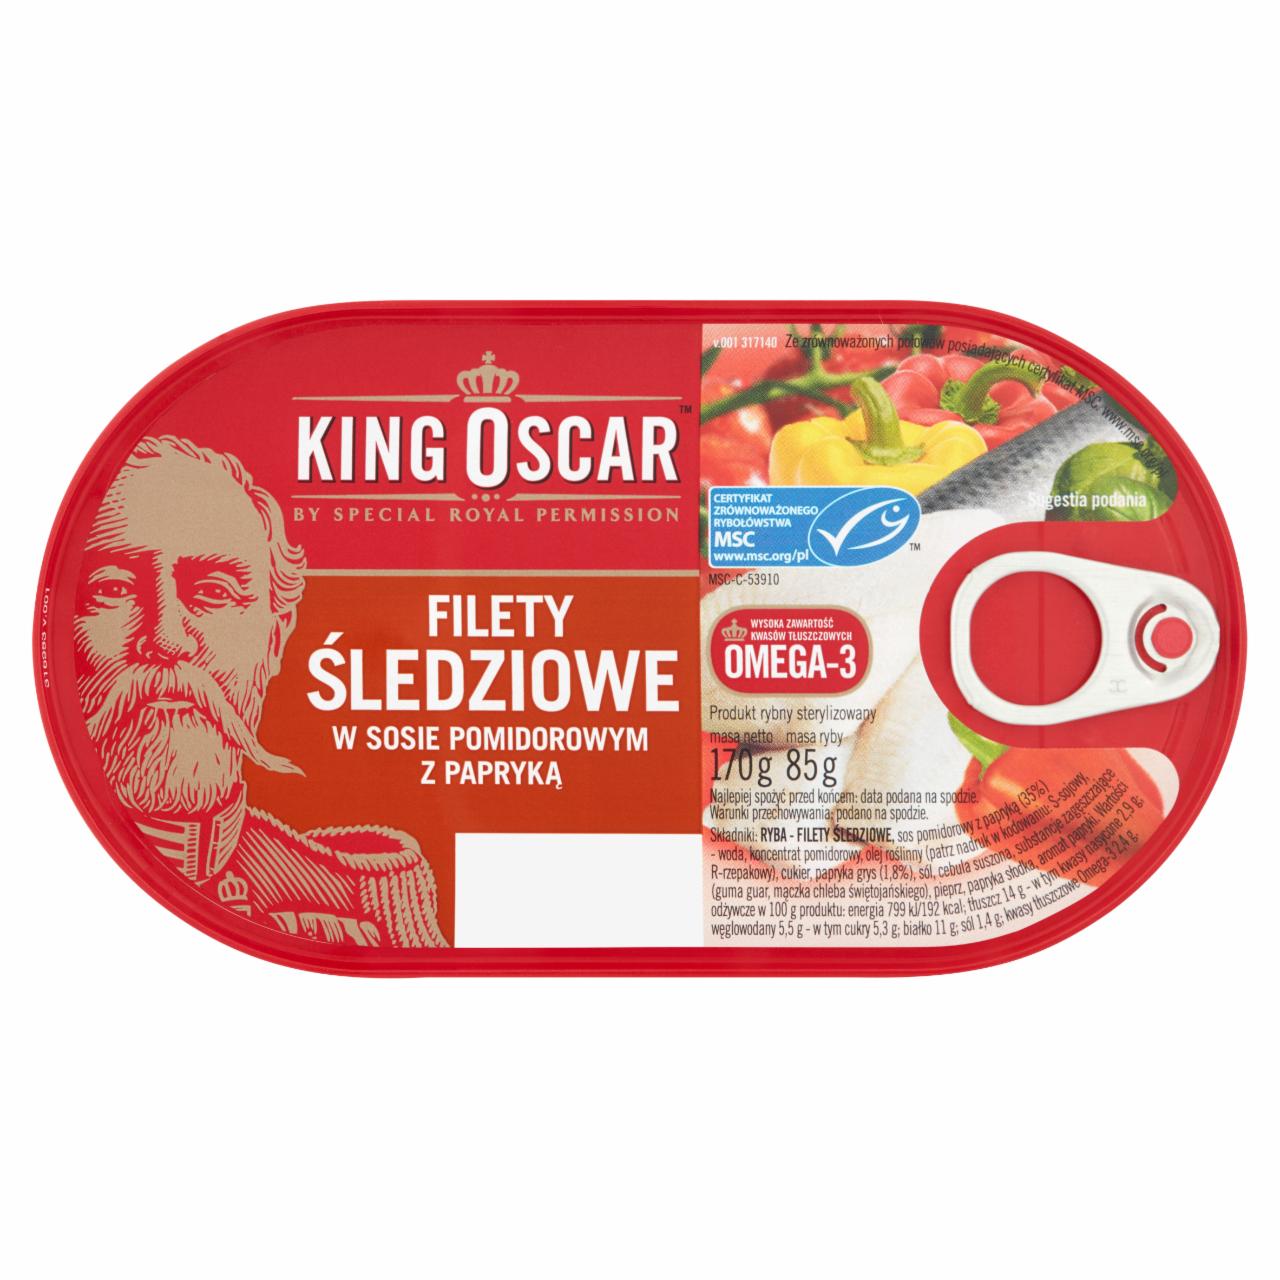 Zdjęcia - King Oscar Filety śledziowe w sosie pomidorowym z papryką 170 g